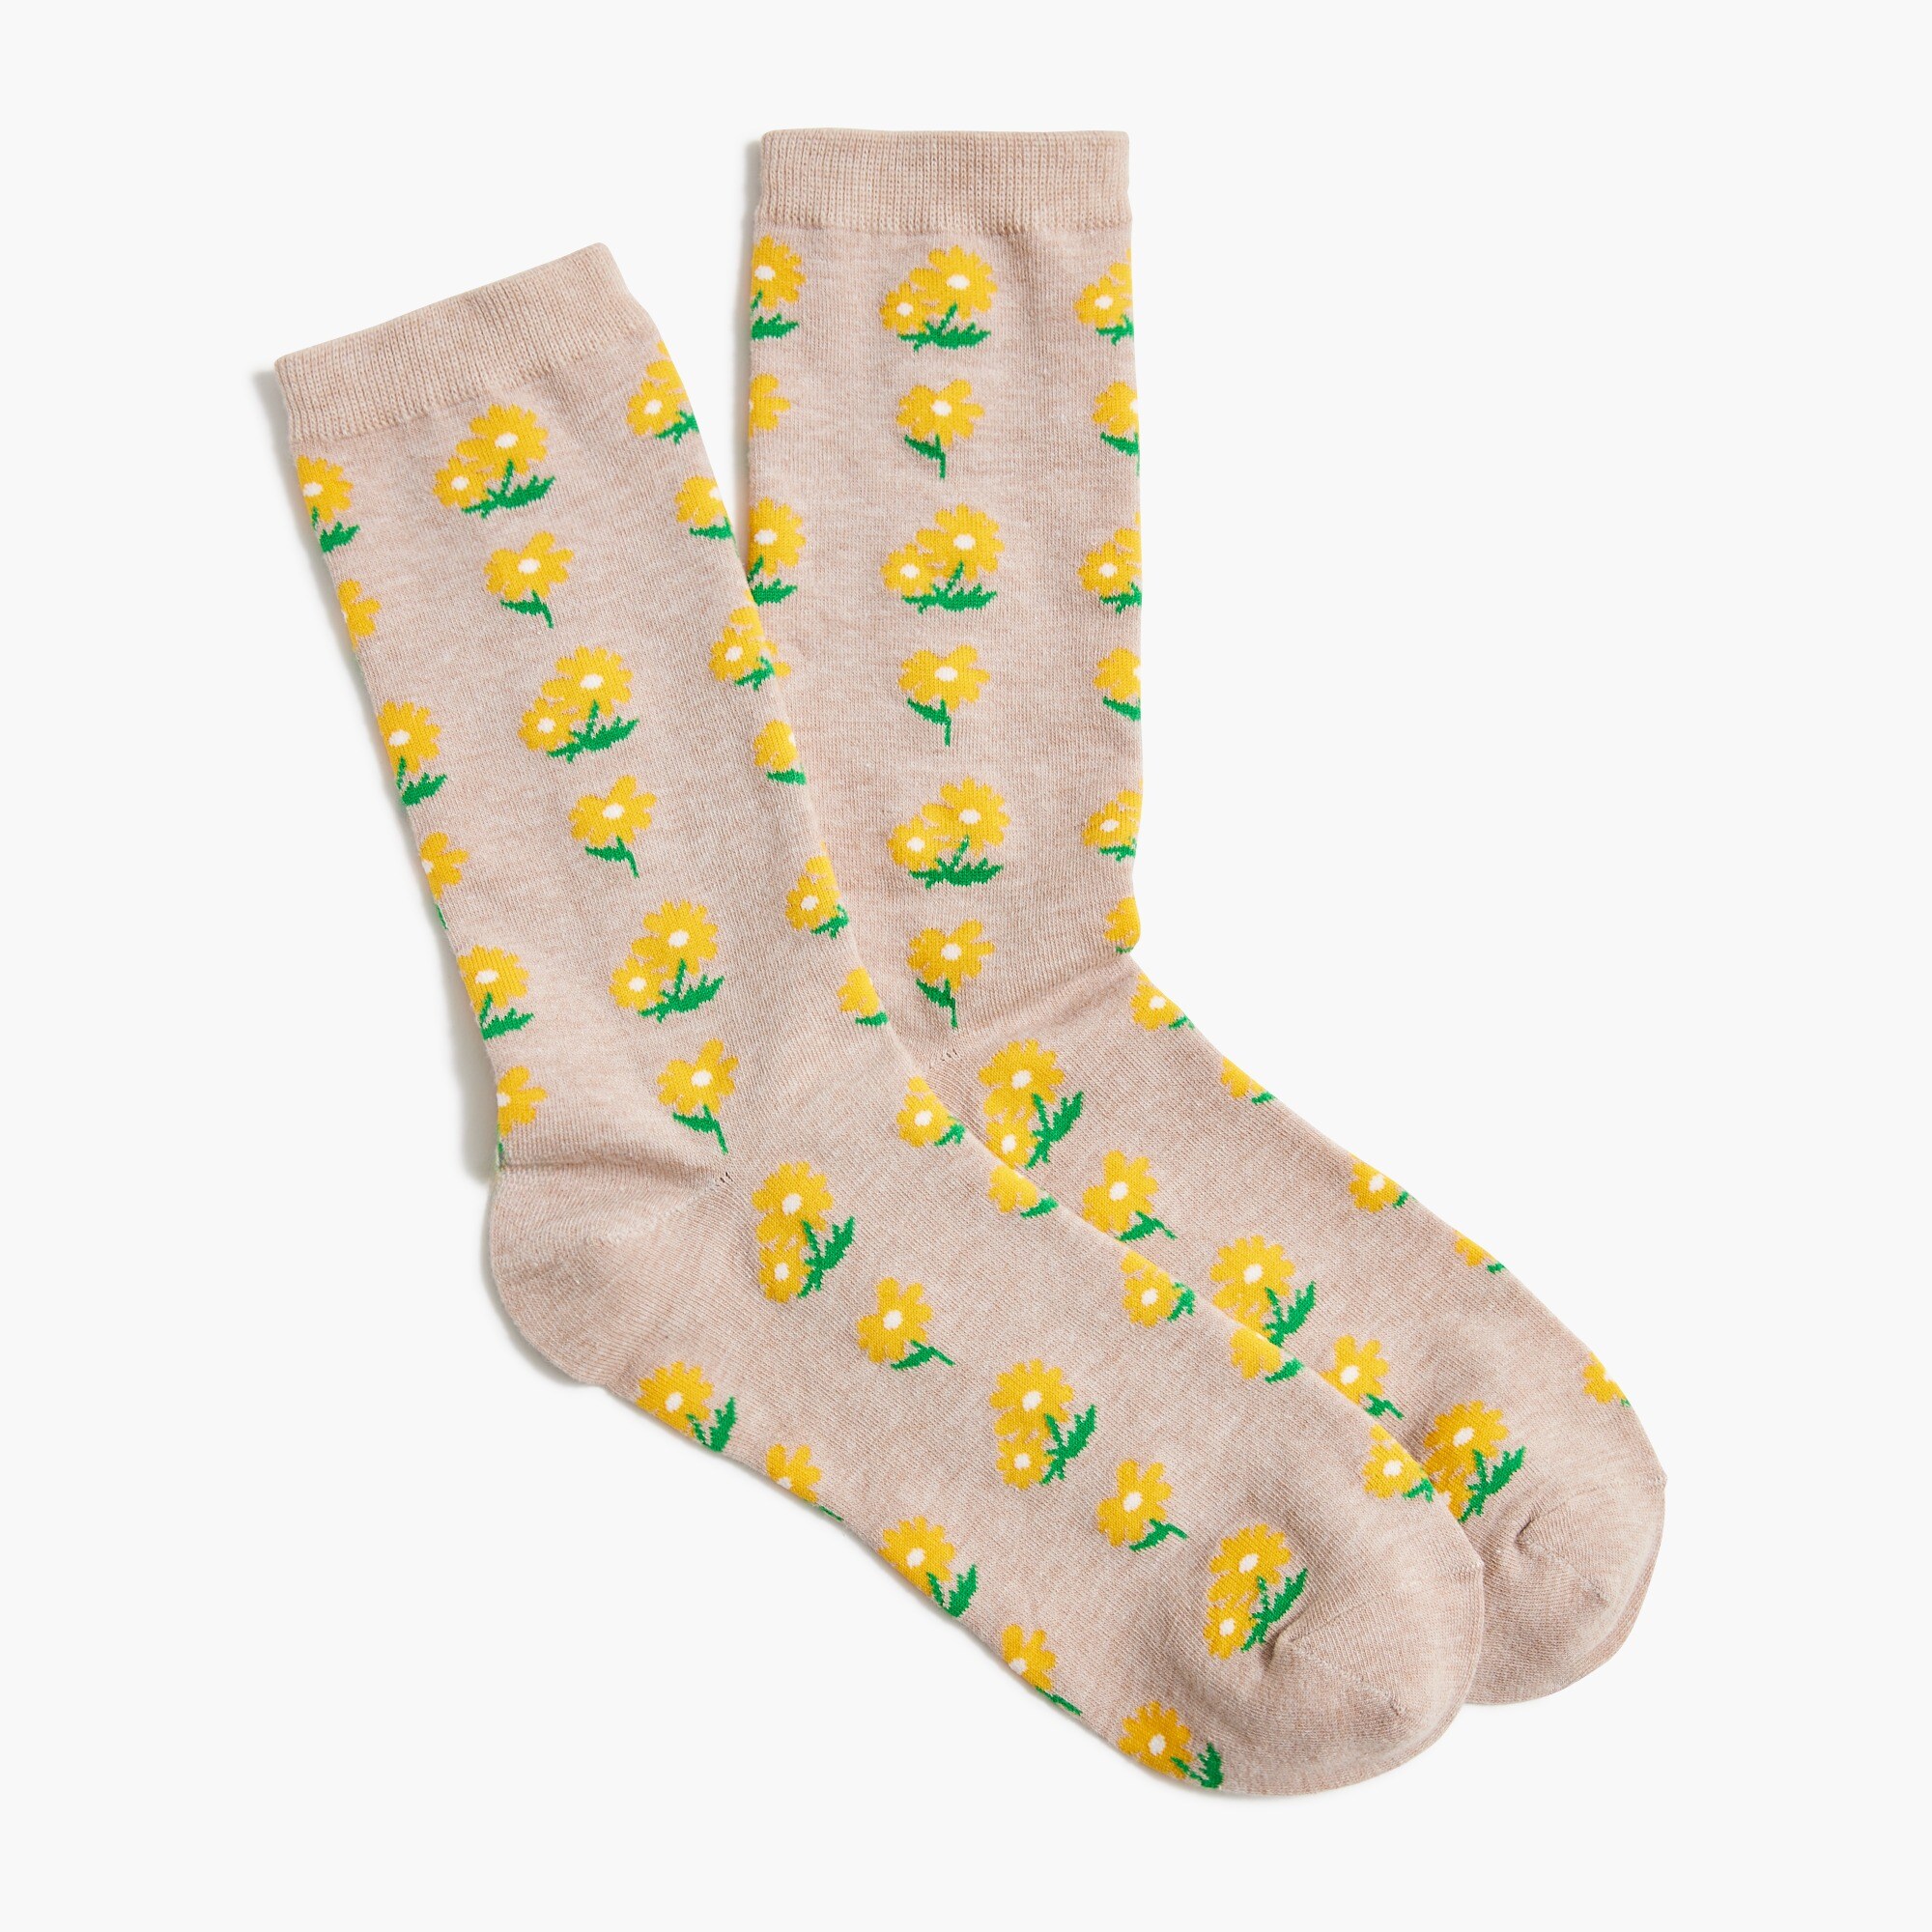  Sunflower trouser socks